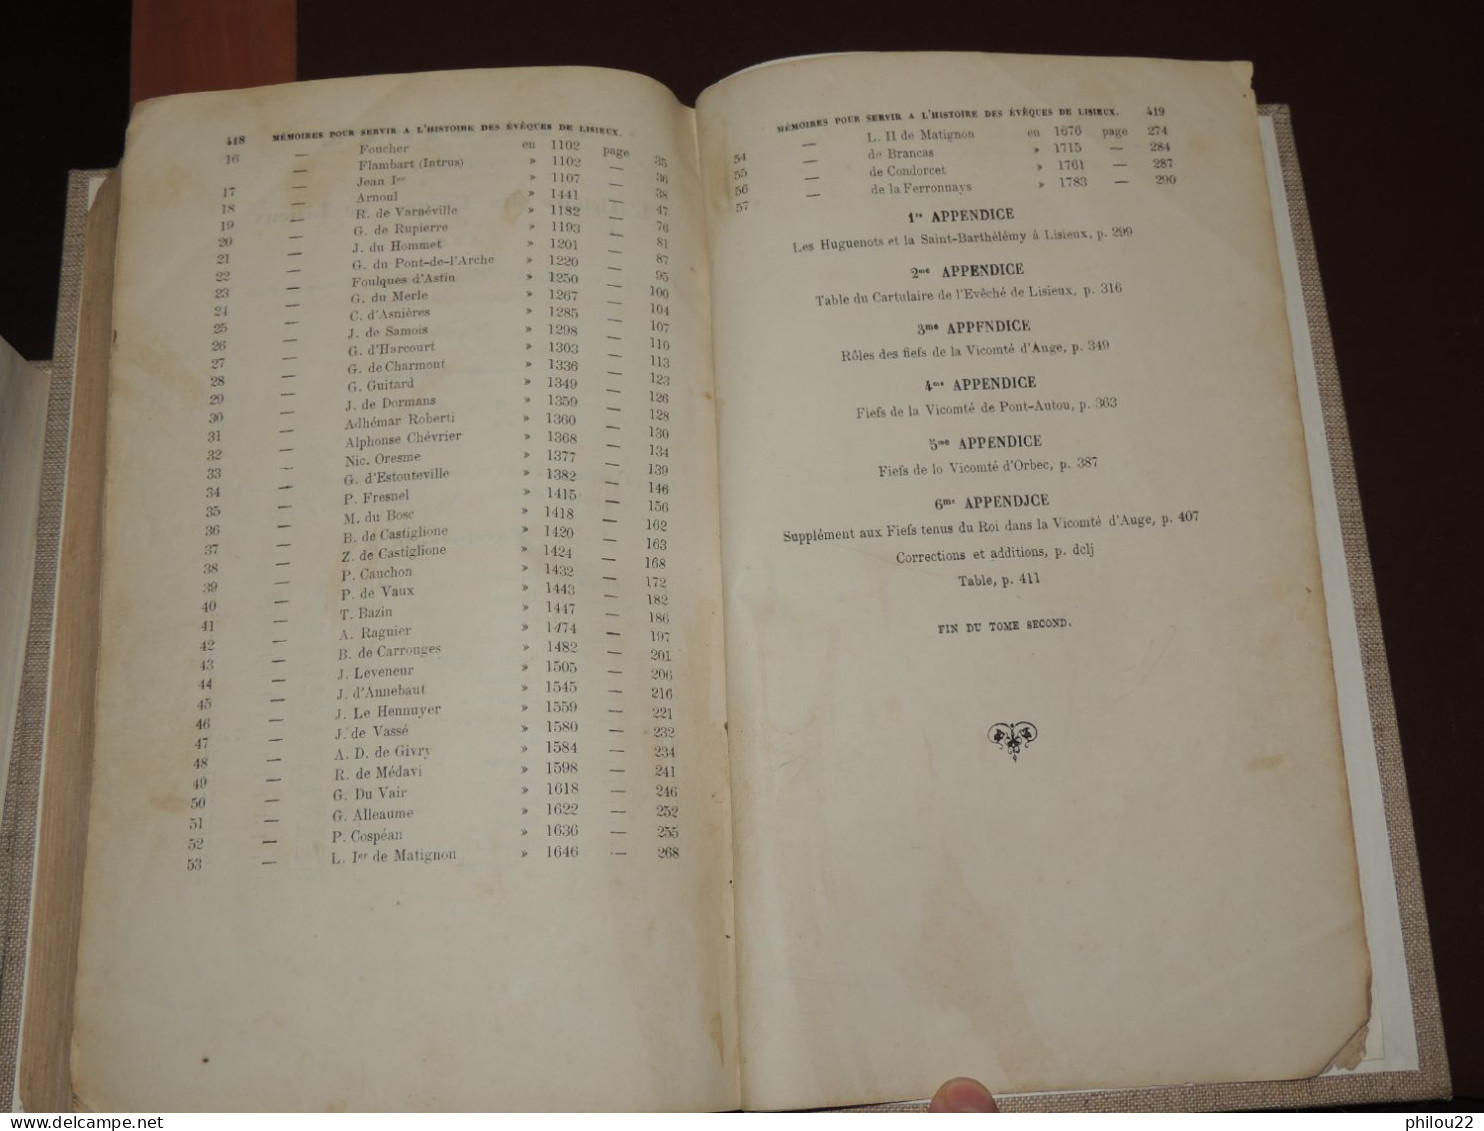 FORMEVILLE - Histoire de l'ancien évêché-comté de Lisieux  E.O. 1874  2/2 vol.